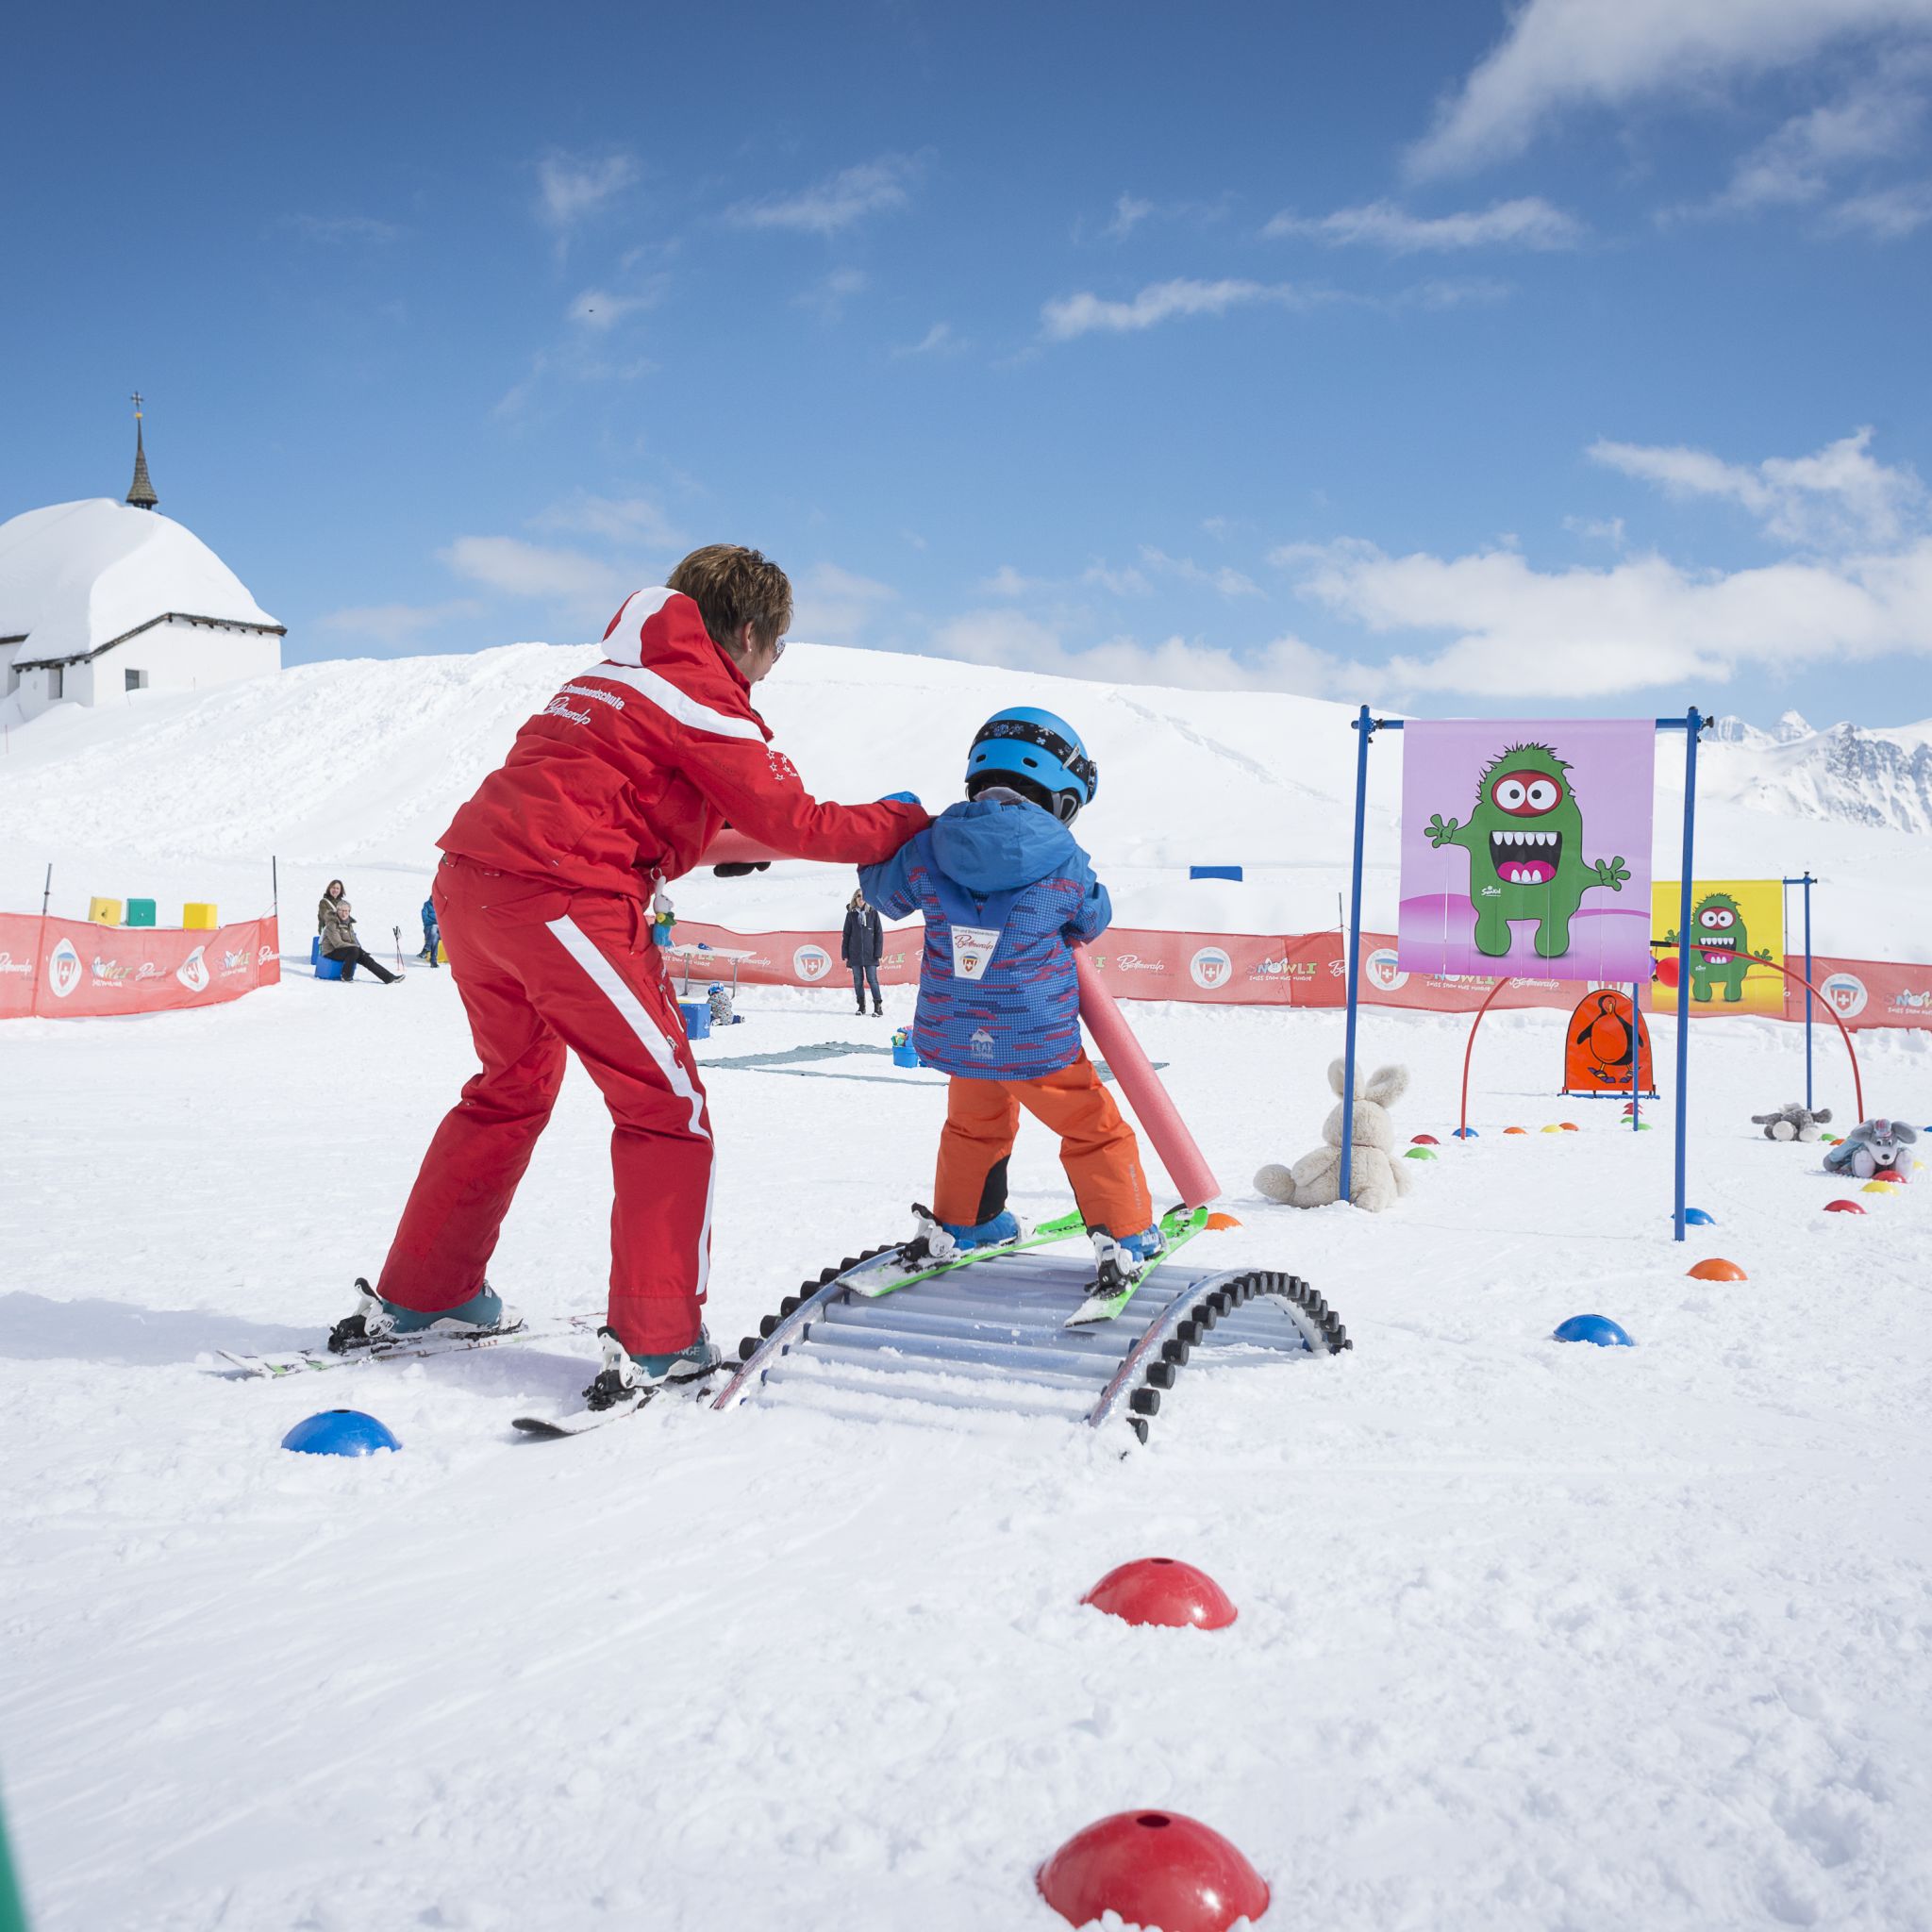 Un petit enfant apprend le ski au jardin des neiges à Bettmeralp à l'aide de sa monitrice